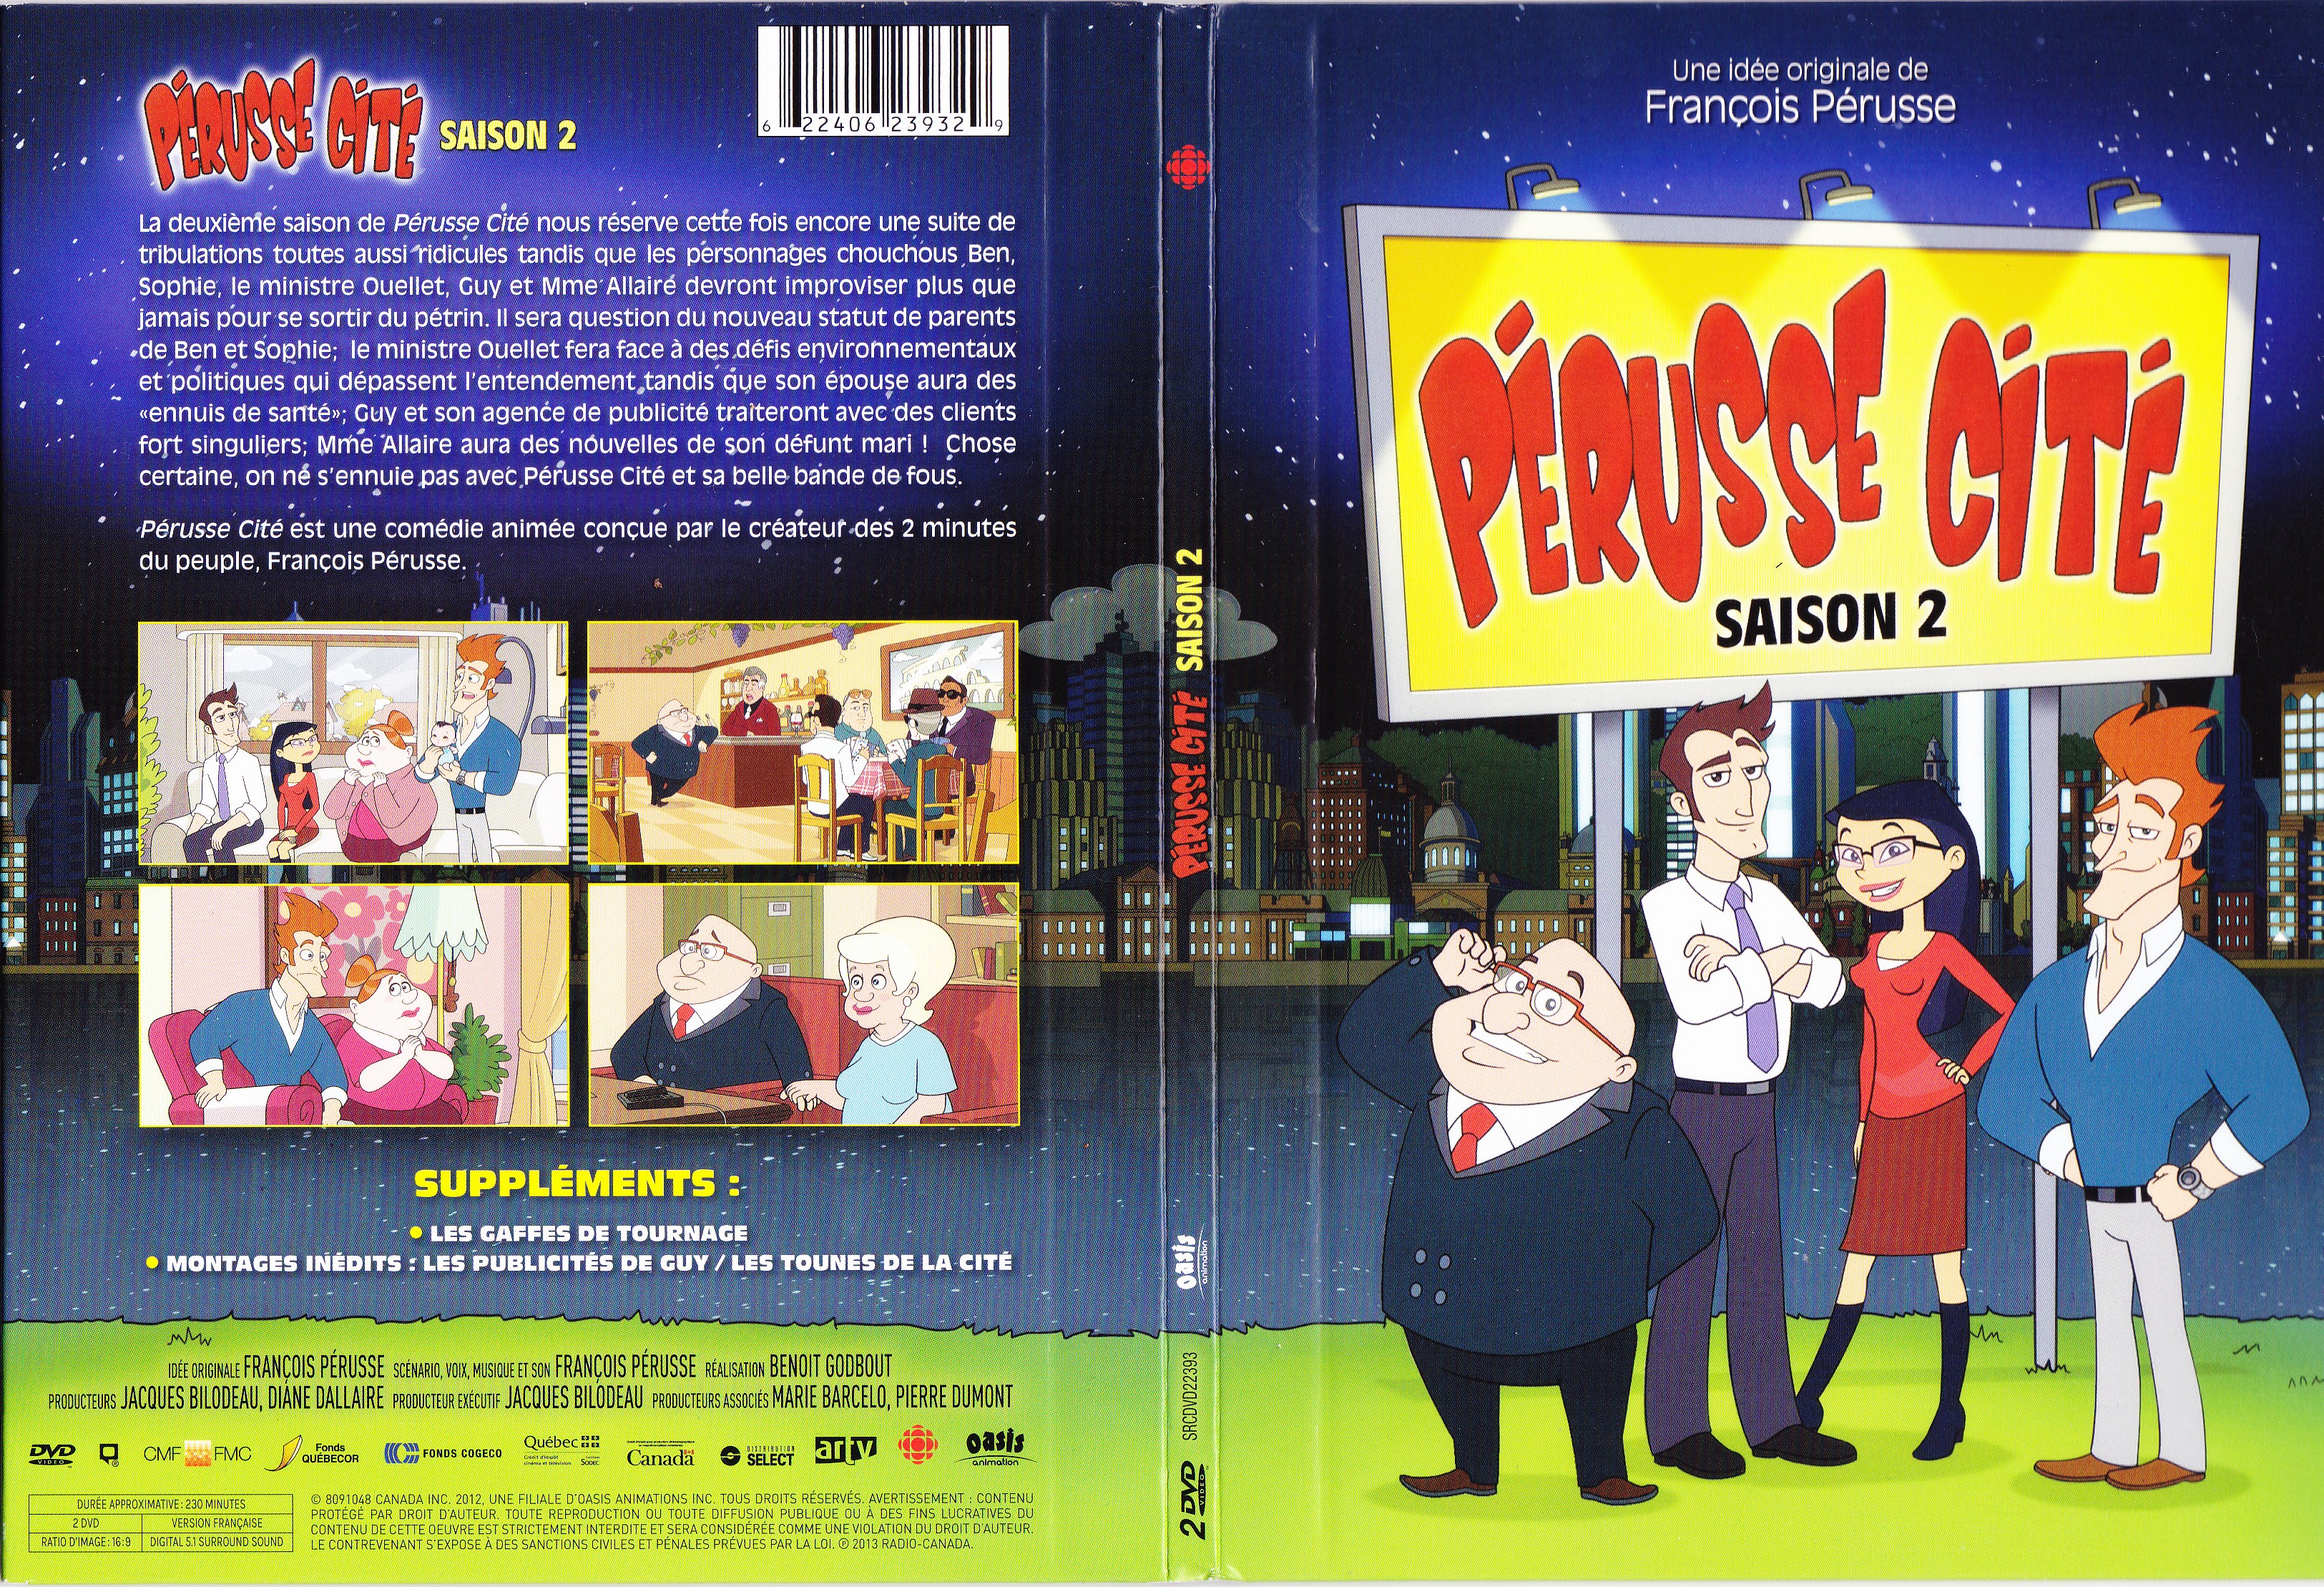 Jaquette DVD Prusse cit saison 2